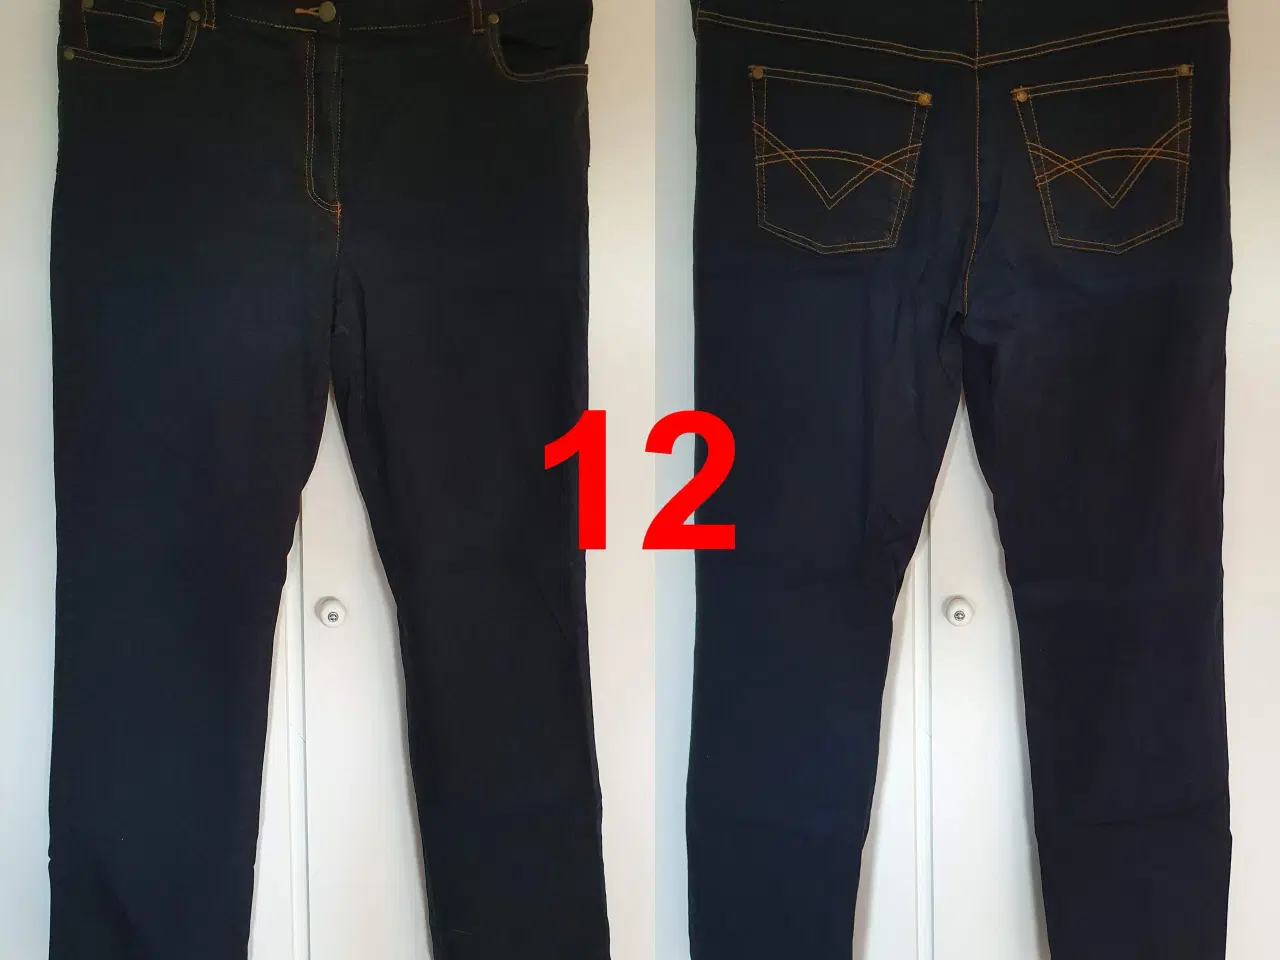 Billede 1 - Bukser / jeans i stakkevis til ingen penge - DEL 3